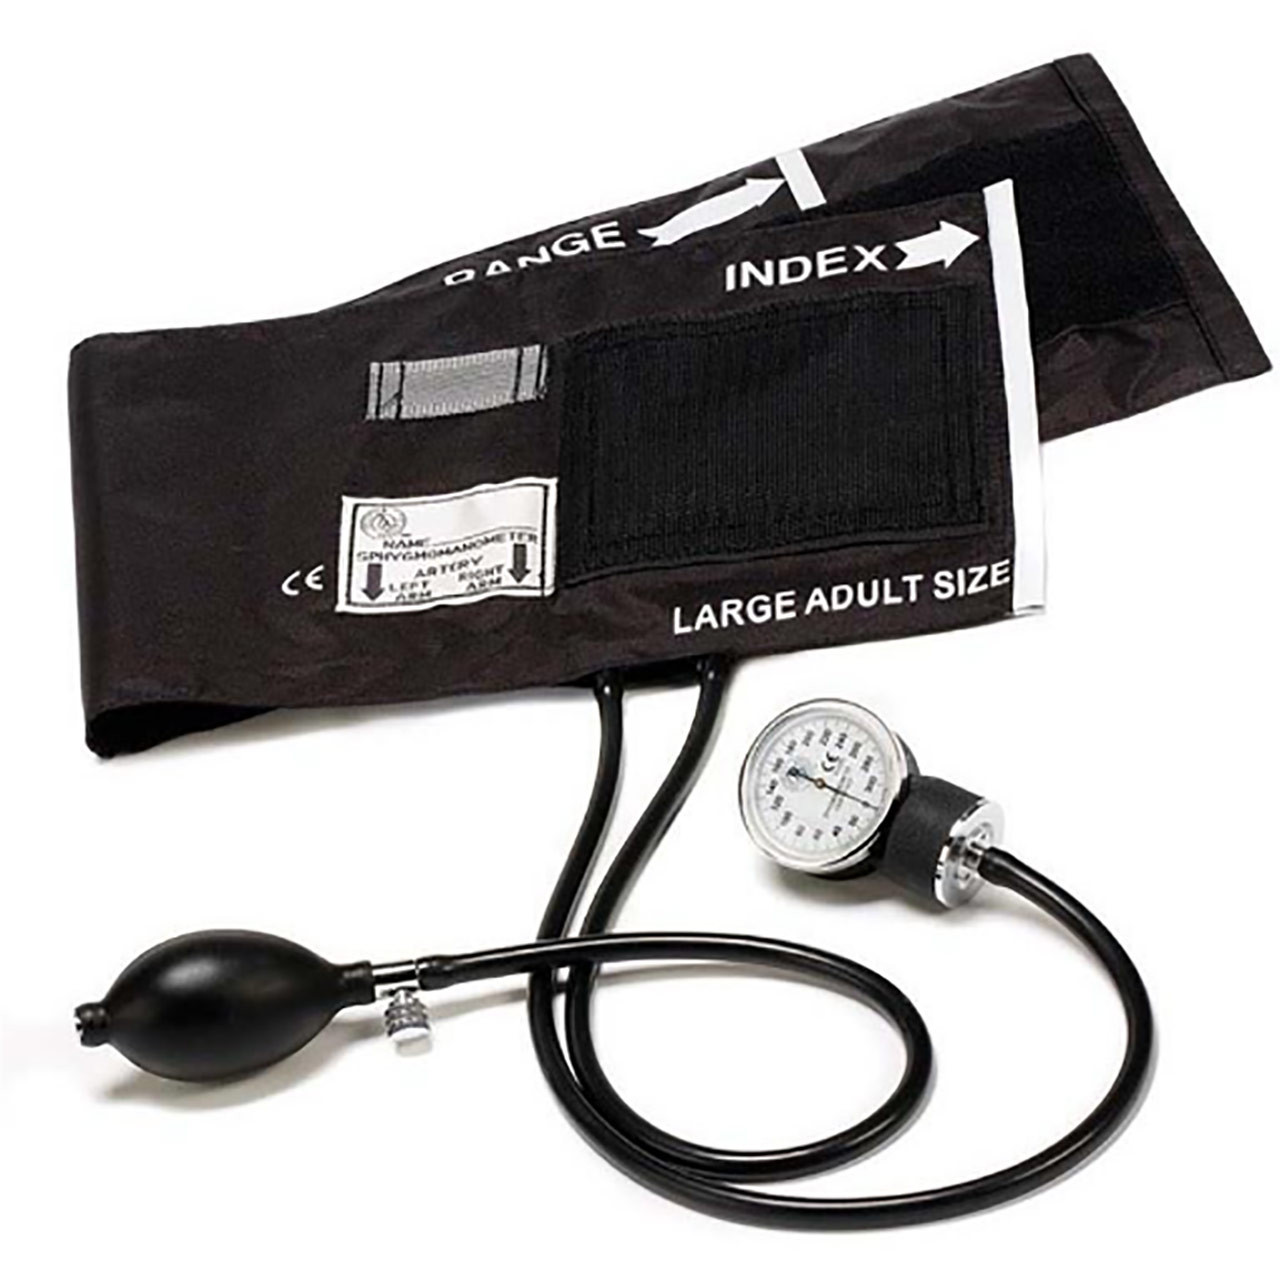 Medline Large Adult Handheld Aneroid Sphygmomanometer